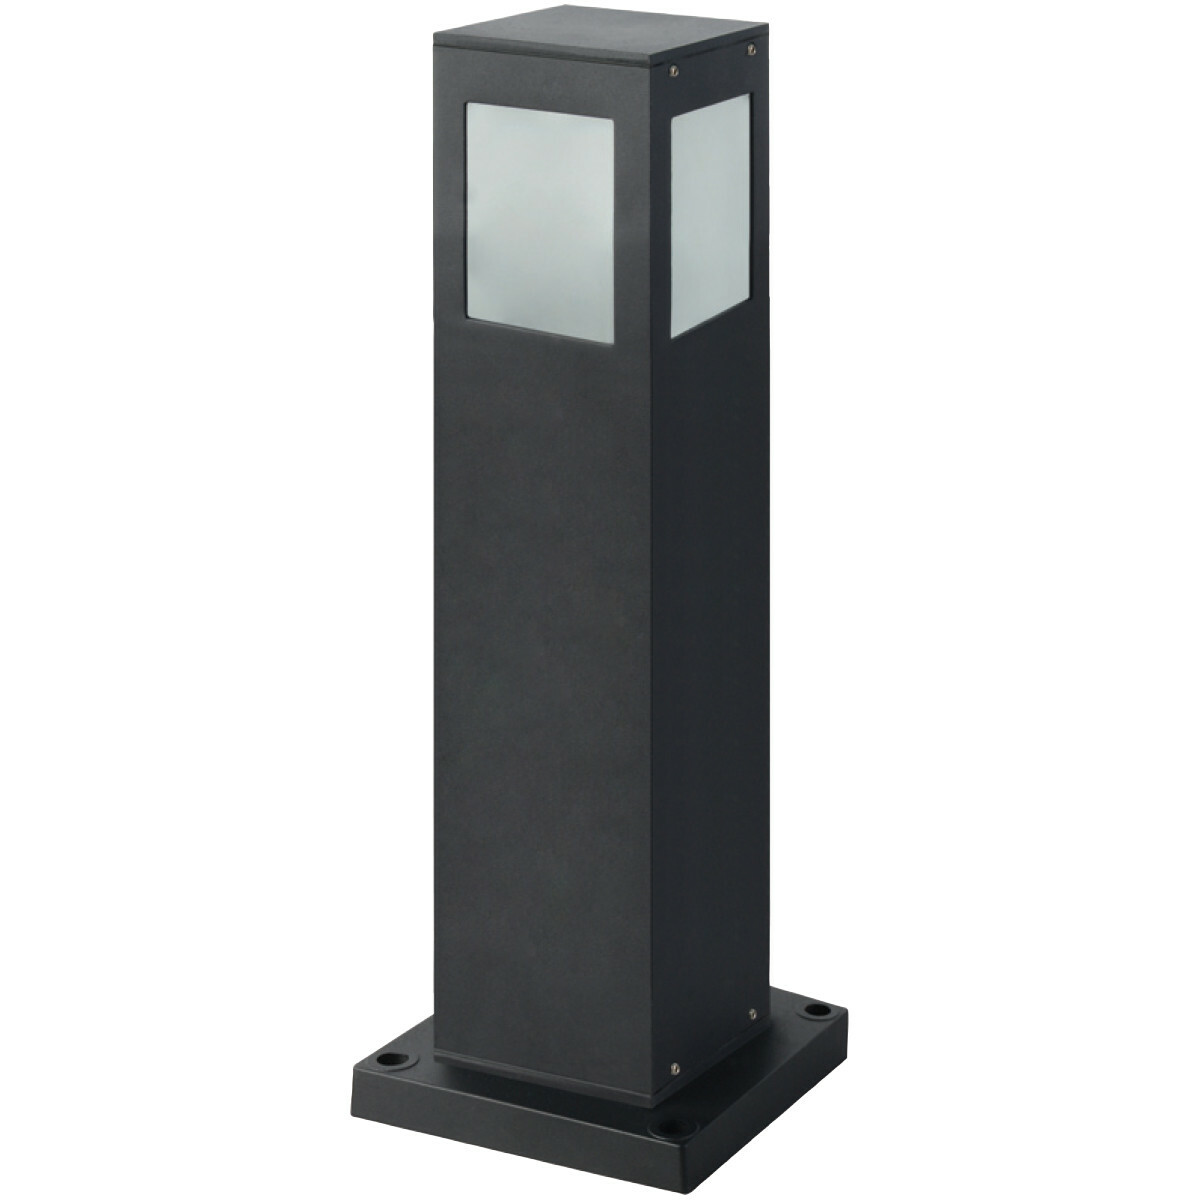 Staande Buitenlamp - Sokkellamp - Kavy 2 - E27 Fitting - Vierkant - Zwart